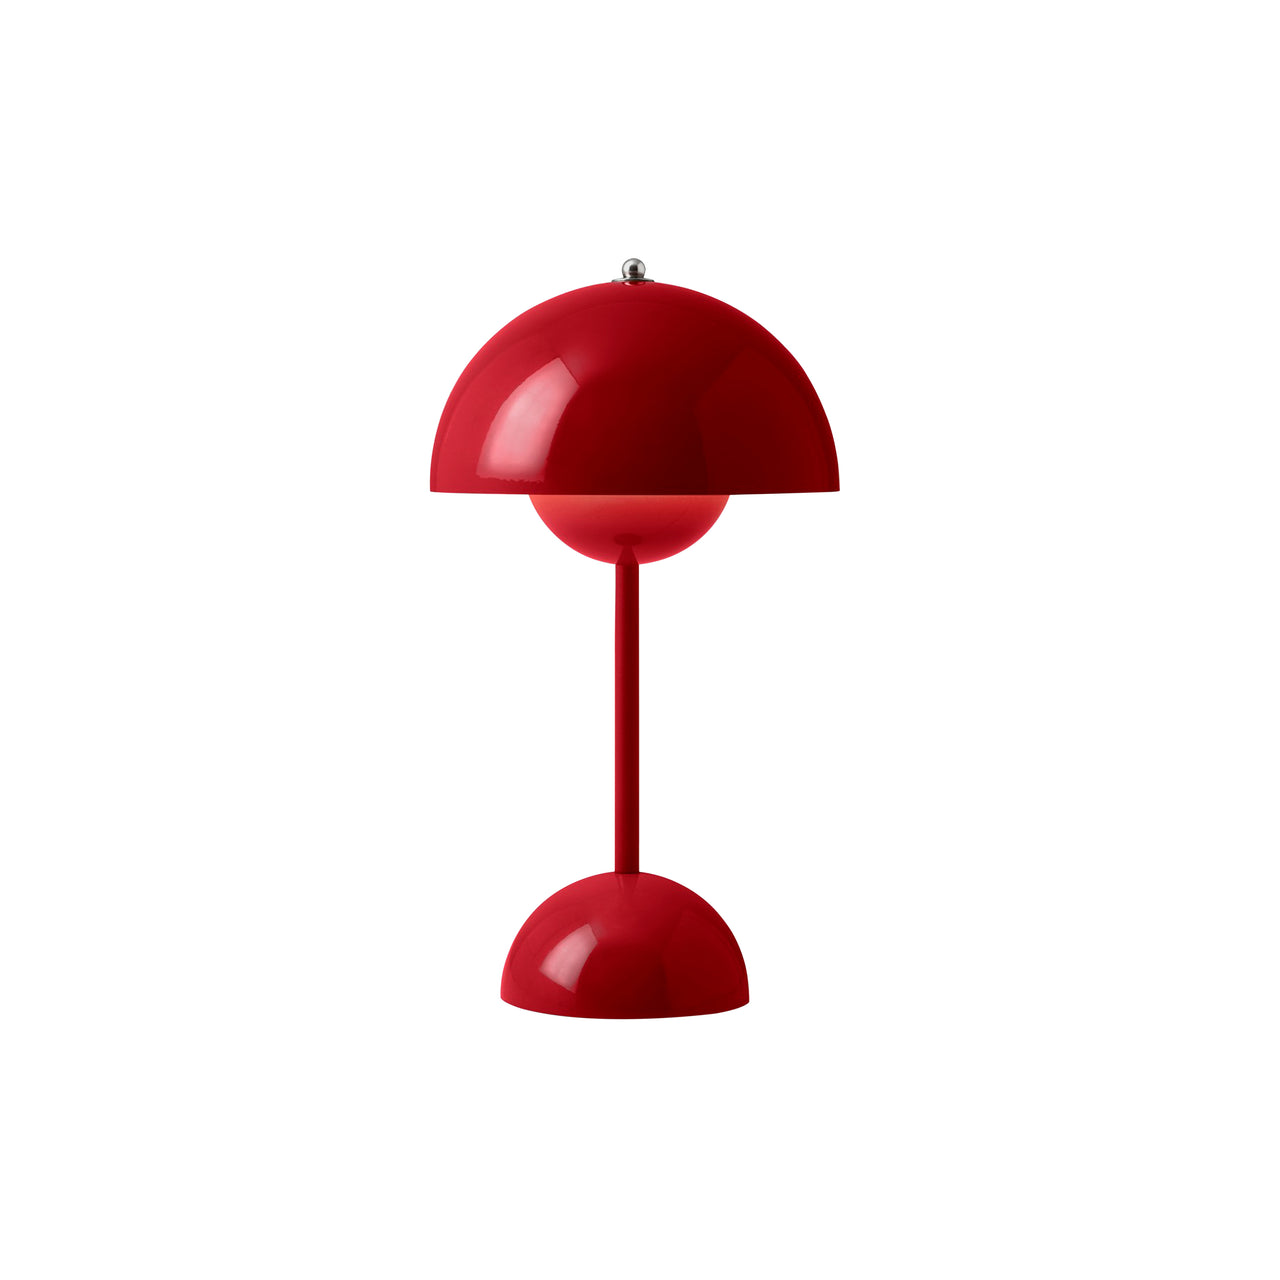 Flowerpot Portable Table Lamp: VP9 + Vermilion Red